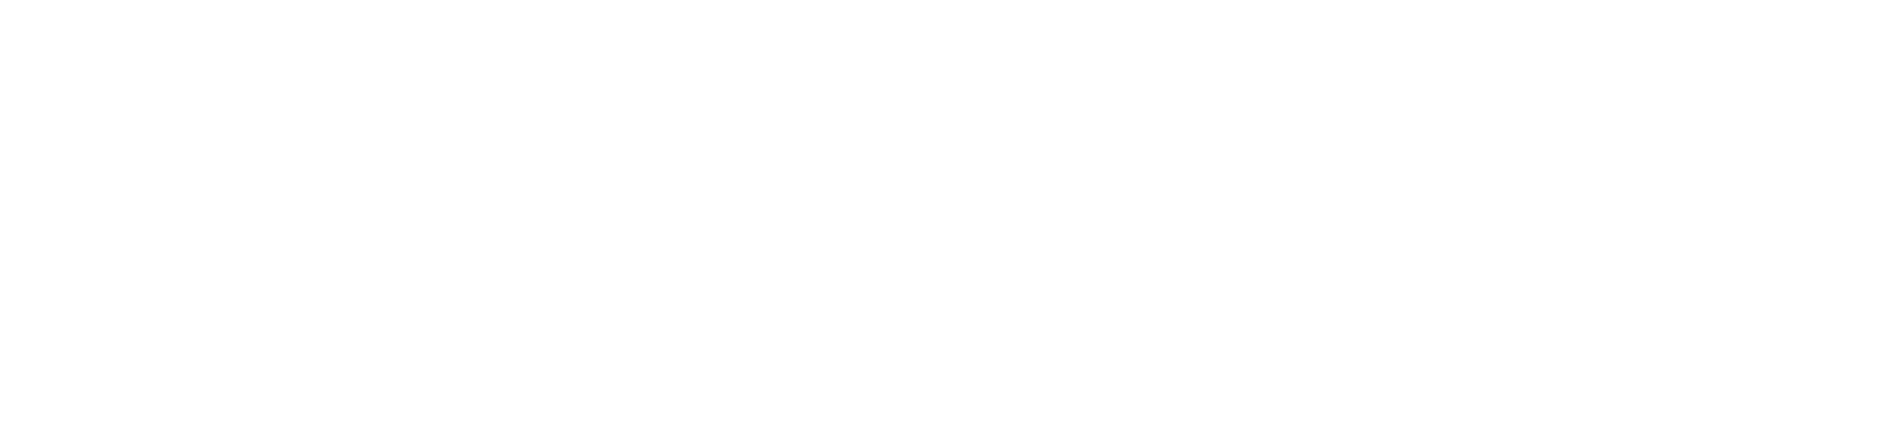 Retail Summit (en) - logo